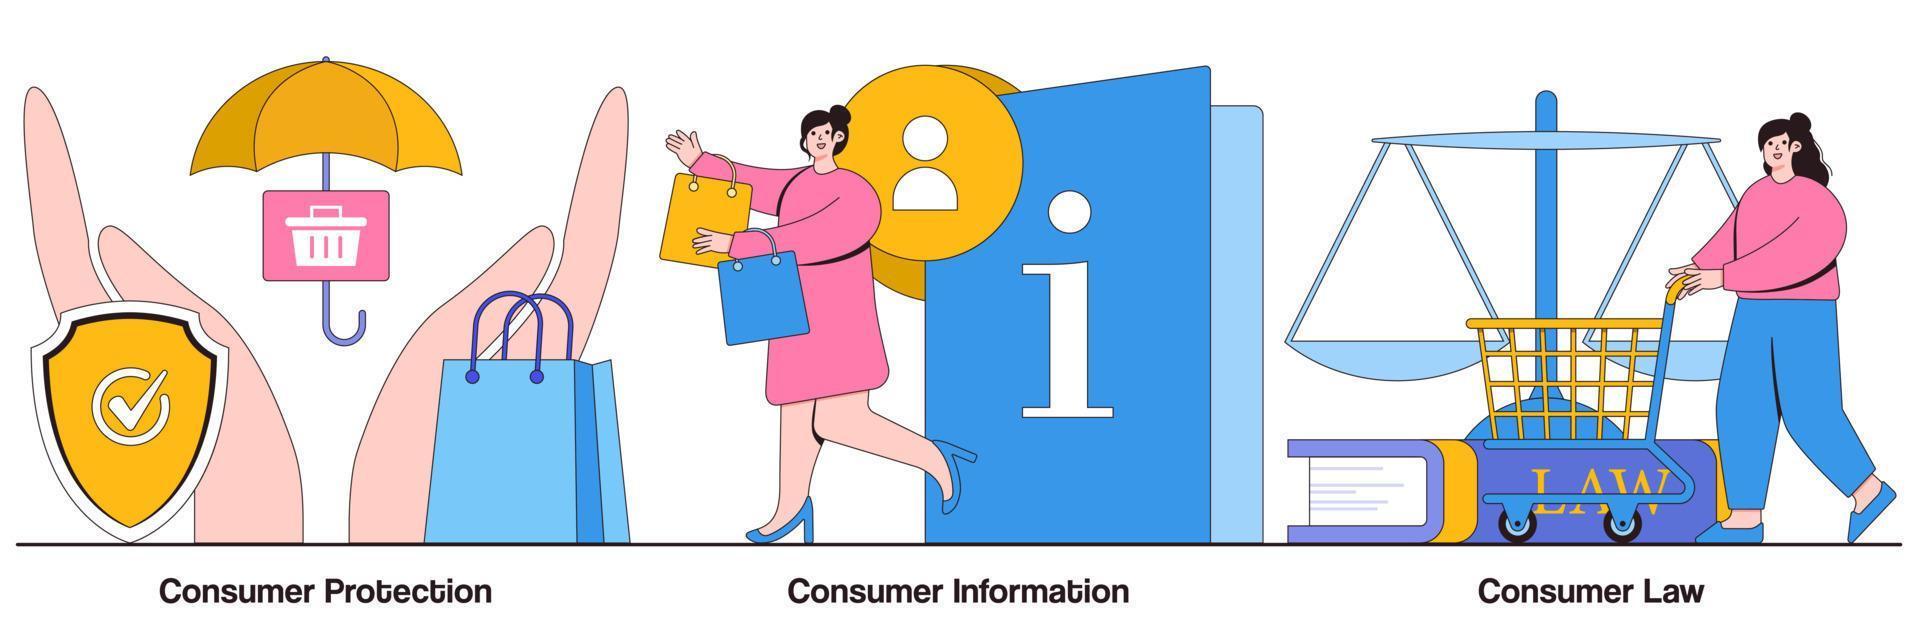 Verbraucherschutz, Information und Recht Bildpaket vektor